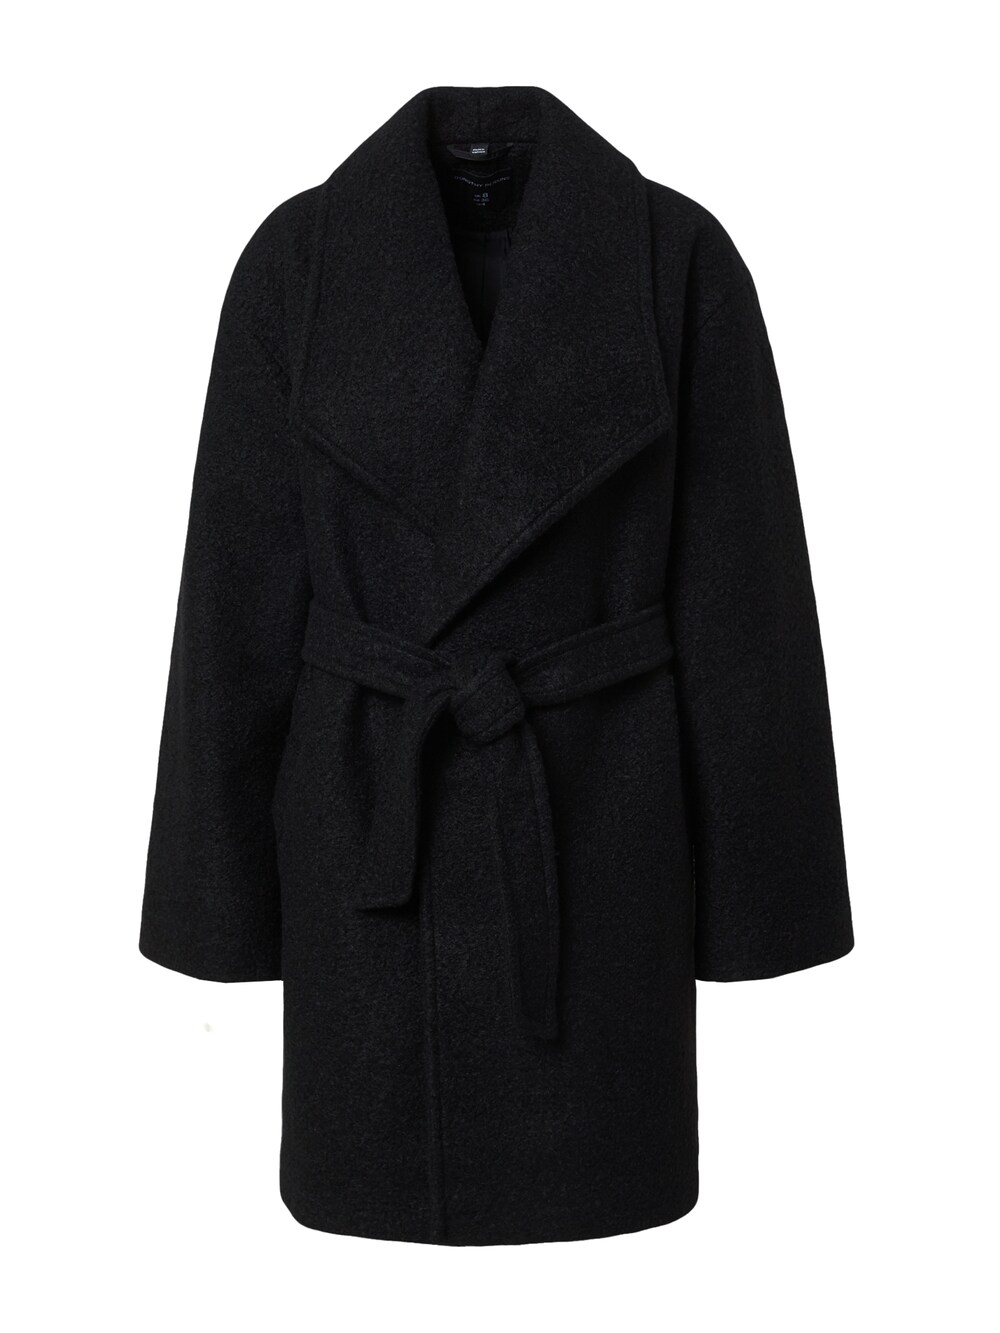 Межсезонное пальто Dorothy Perkins, черный межсезонное пальто dorothy perkins кэмел